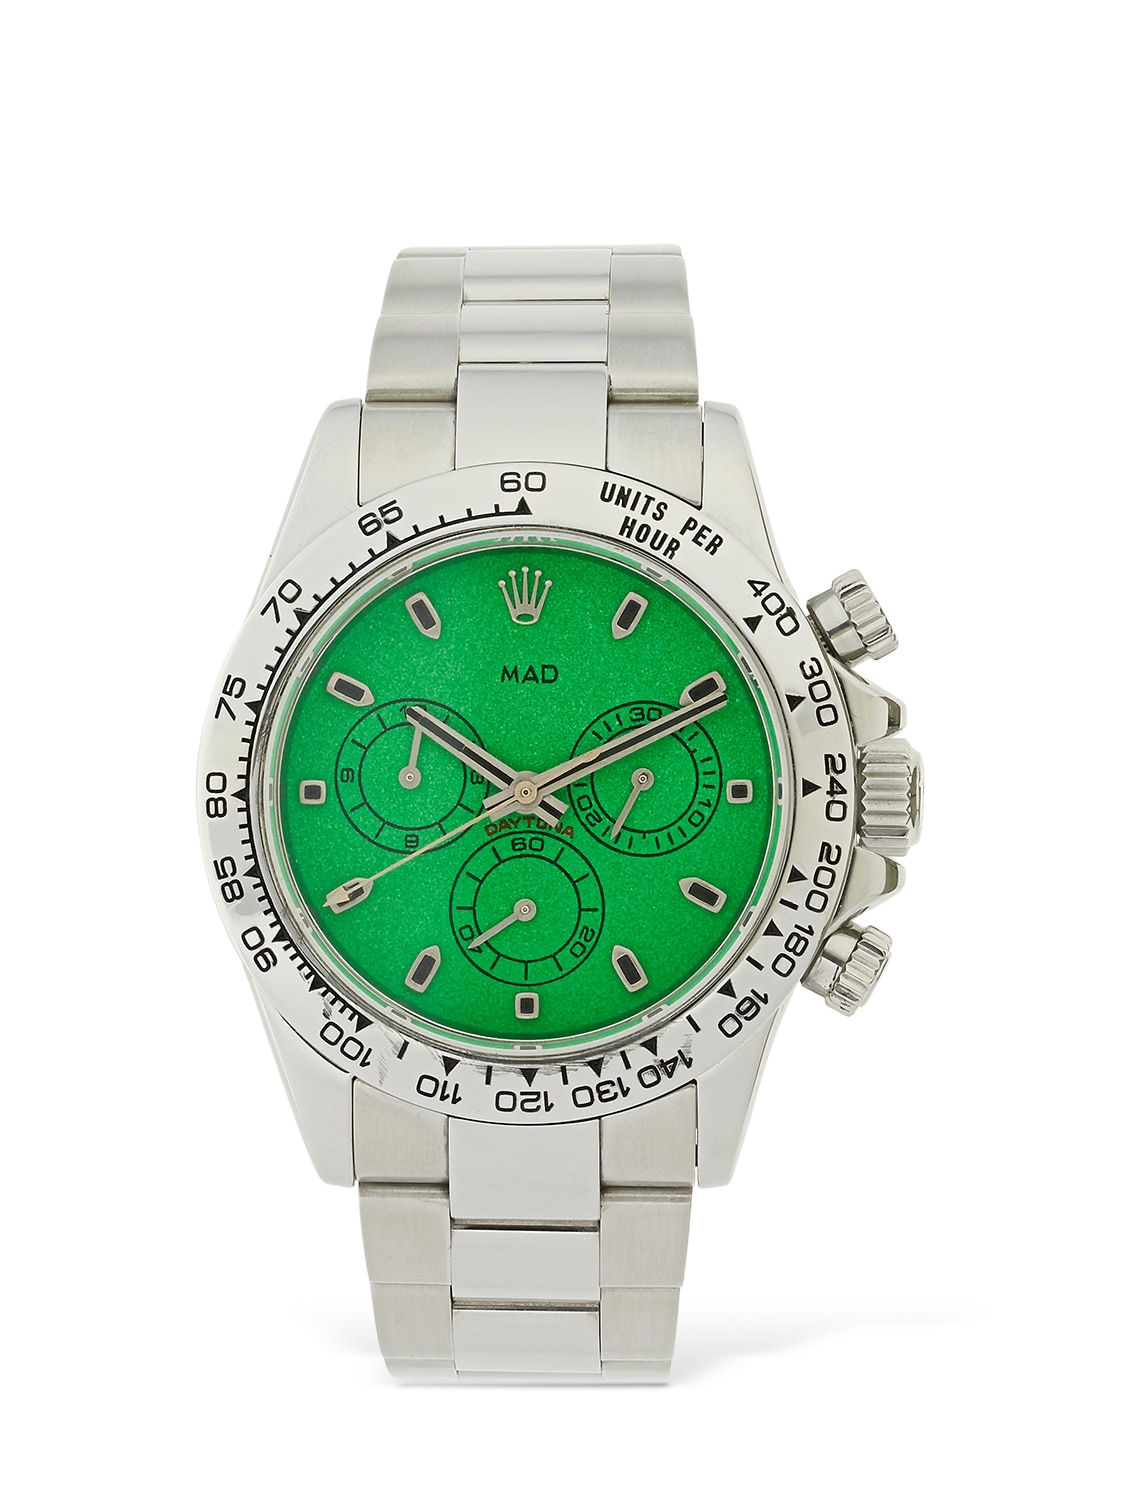 Mad Paris 40mm Rolex Daytona Watch In Silver,green